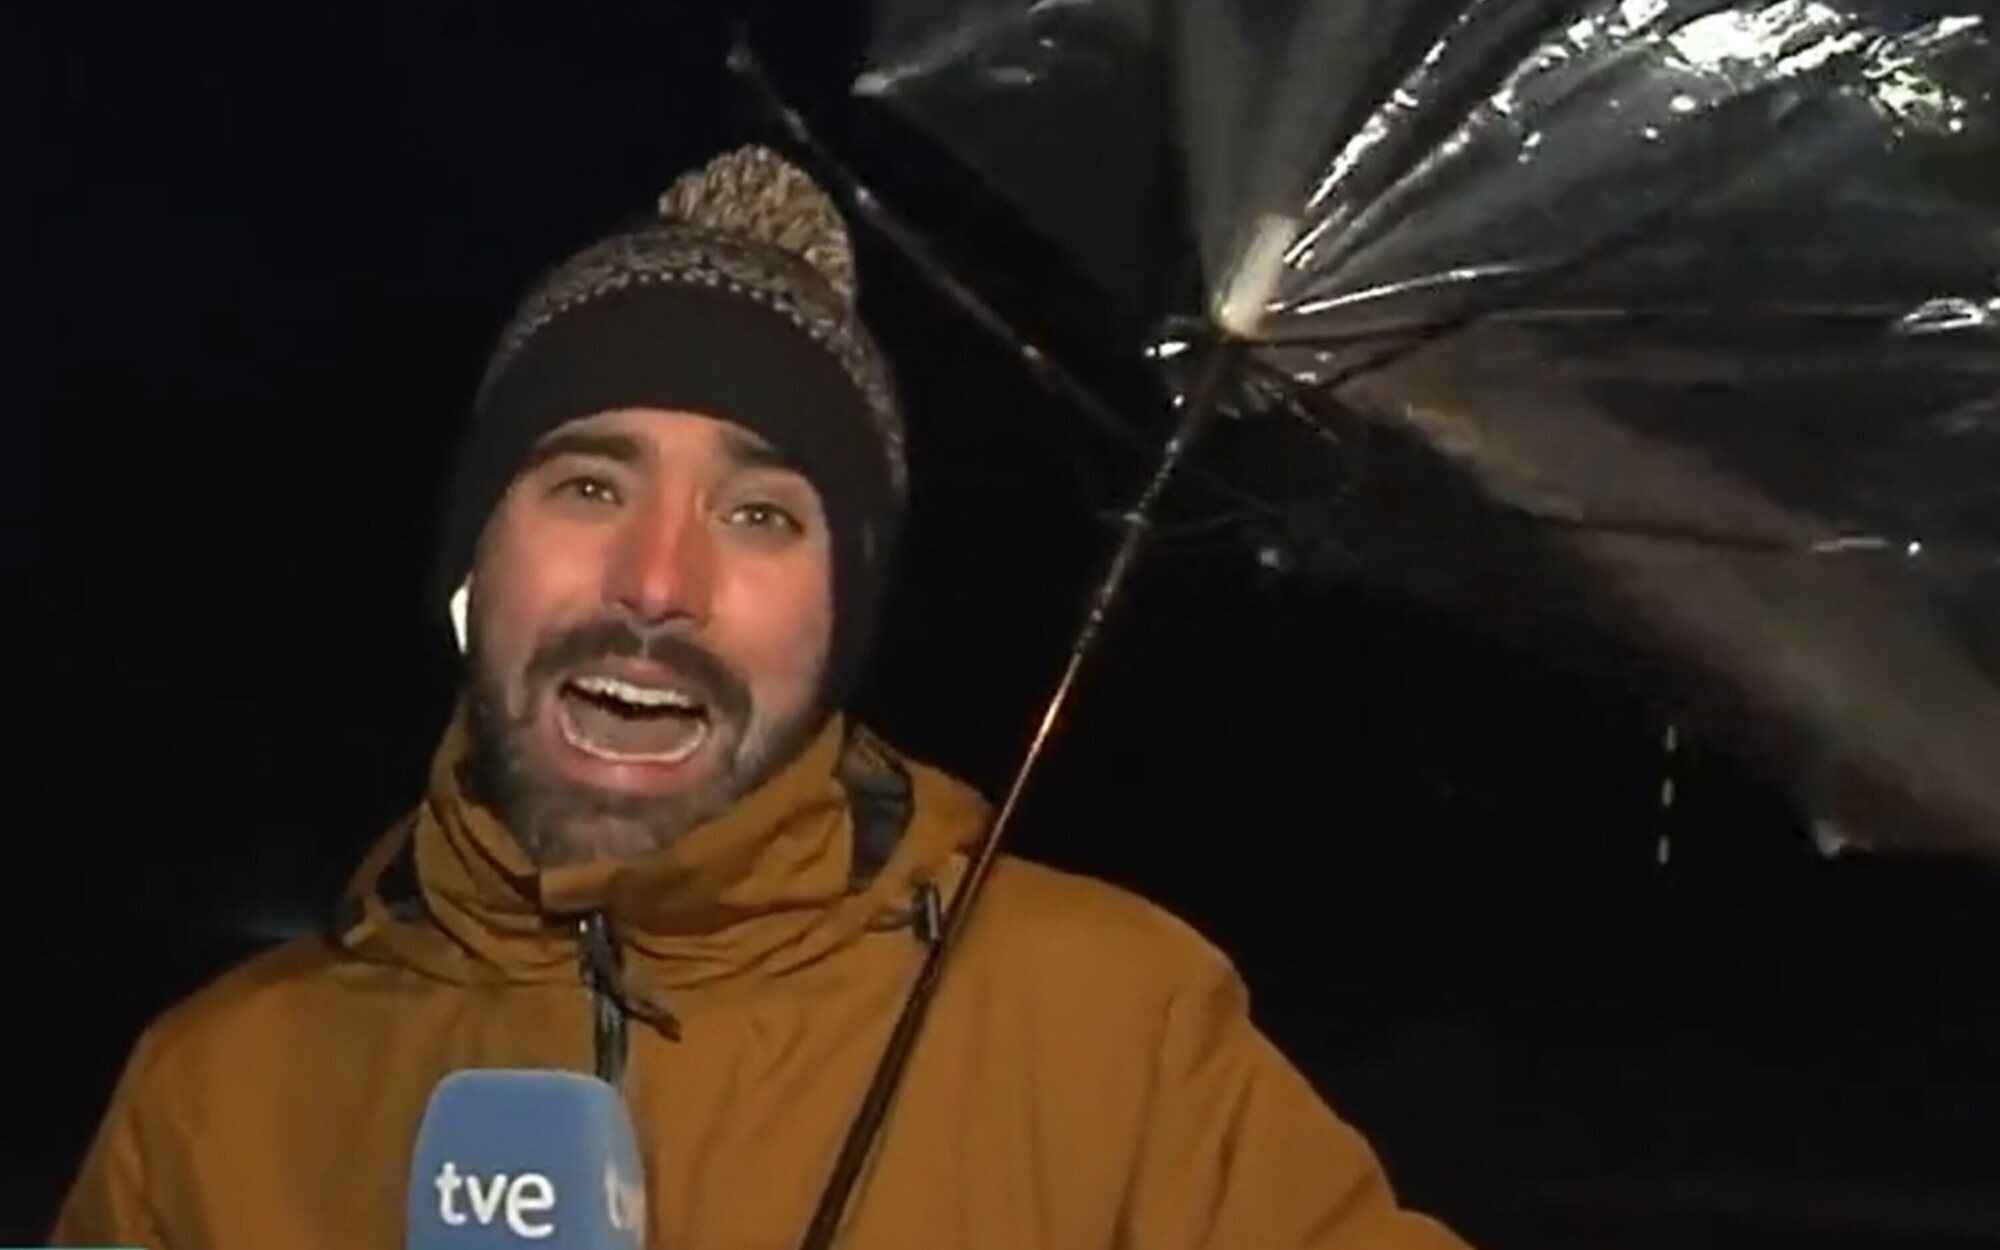 El viento destroza el paraguas de un reportero de 'La hora de La 1': "Parece que me lo vais a tener que pagar"